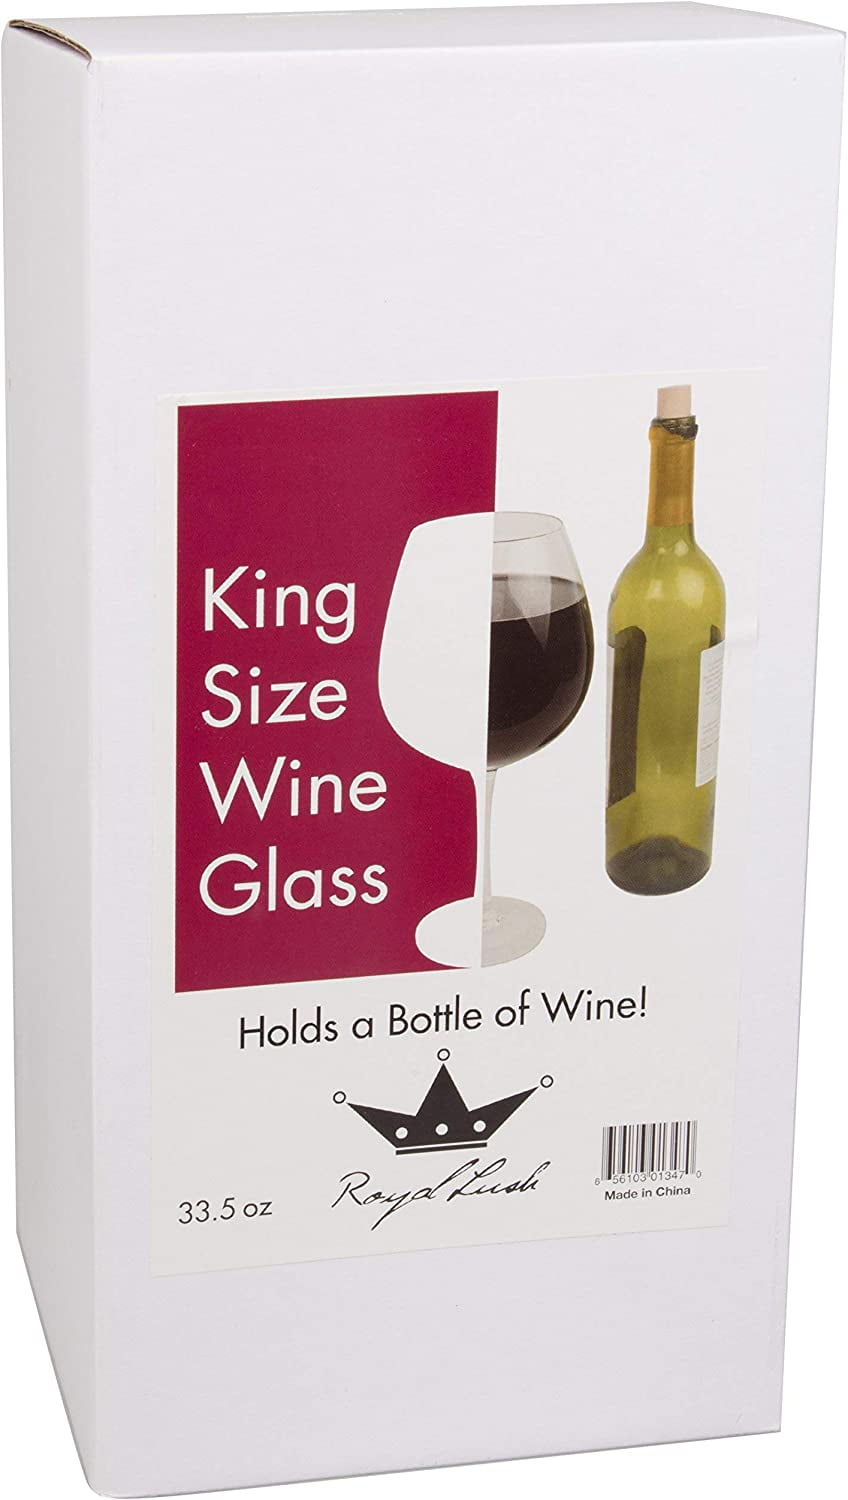 Giant Acrylic Wine Glass 2465oz / 70ltr